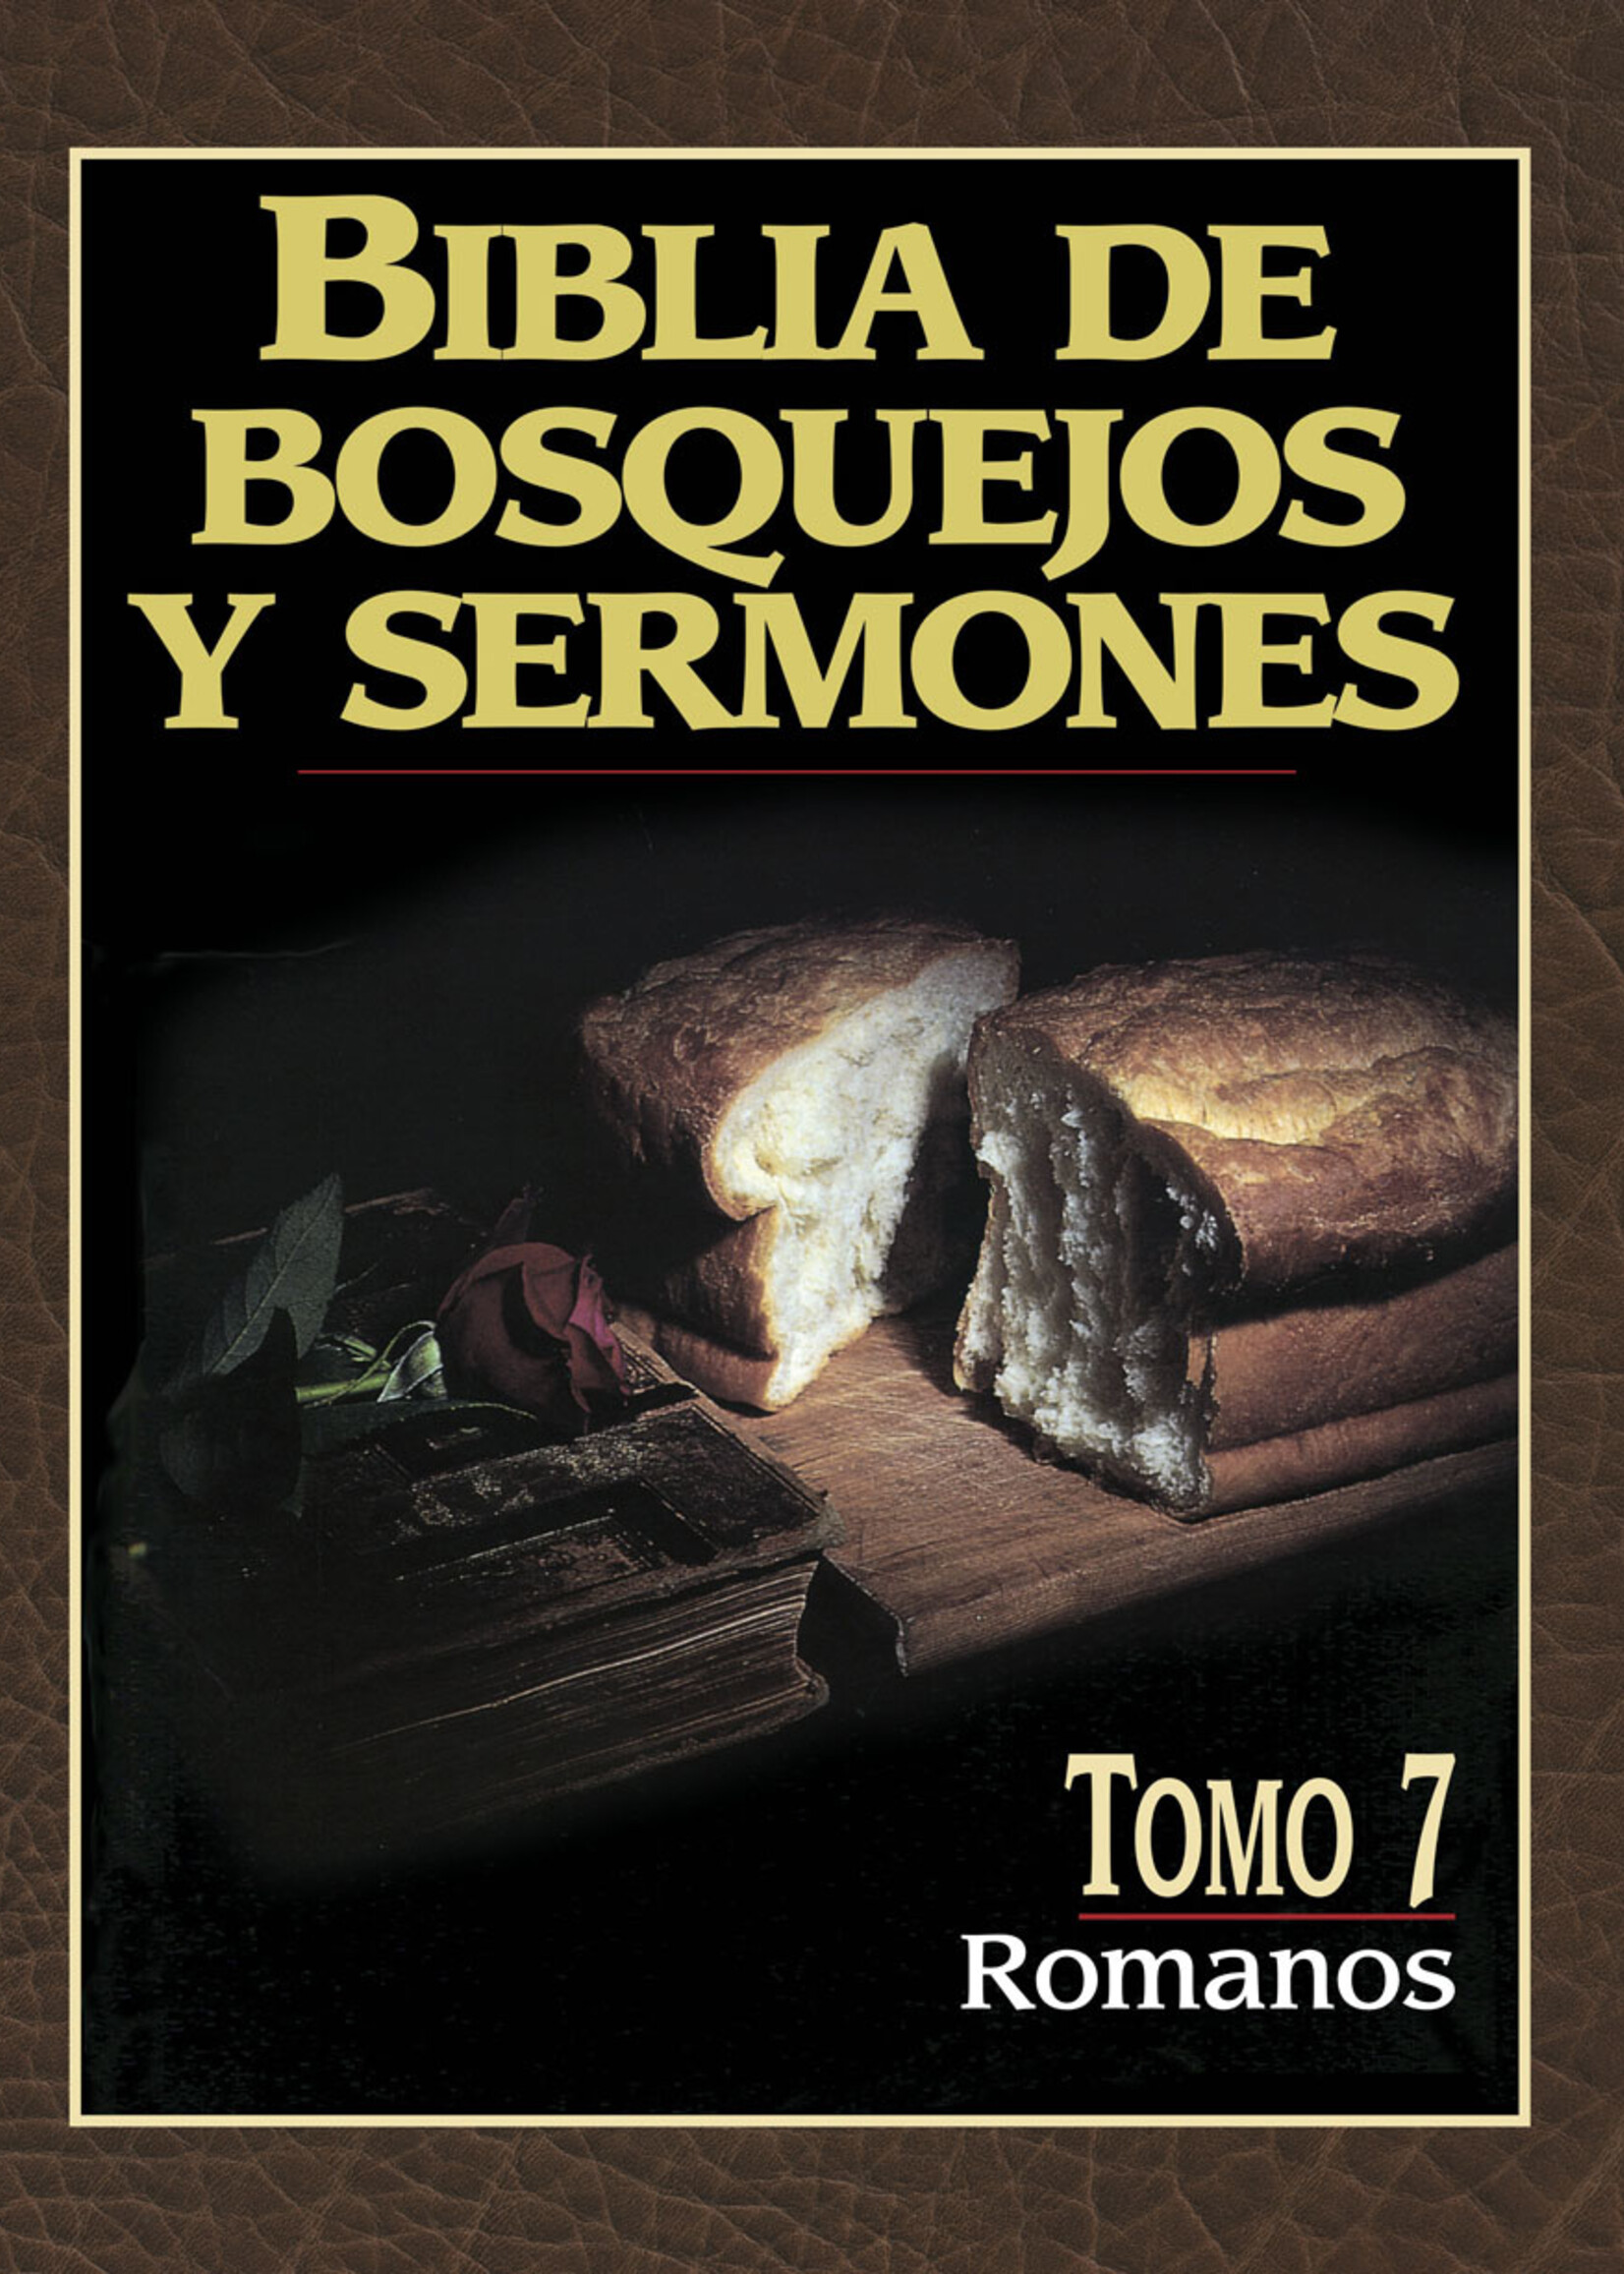 PORTAVOZ BIBLIA DE BOSQUEJOS Y SERMONES: ROMANOS